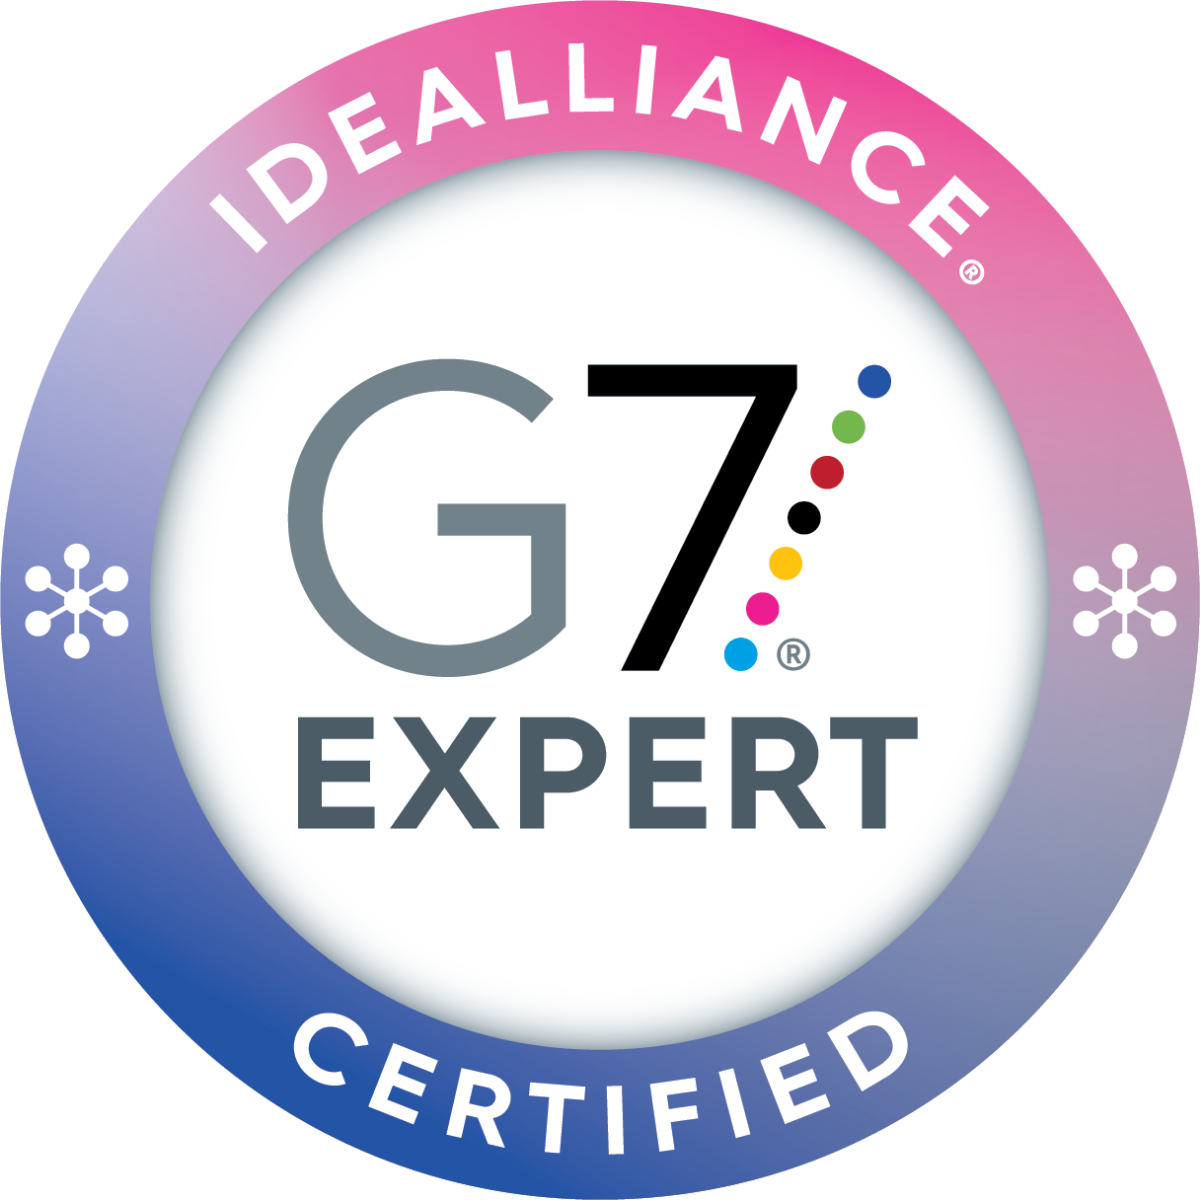 idealliance_certificatebadge_G7expert